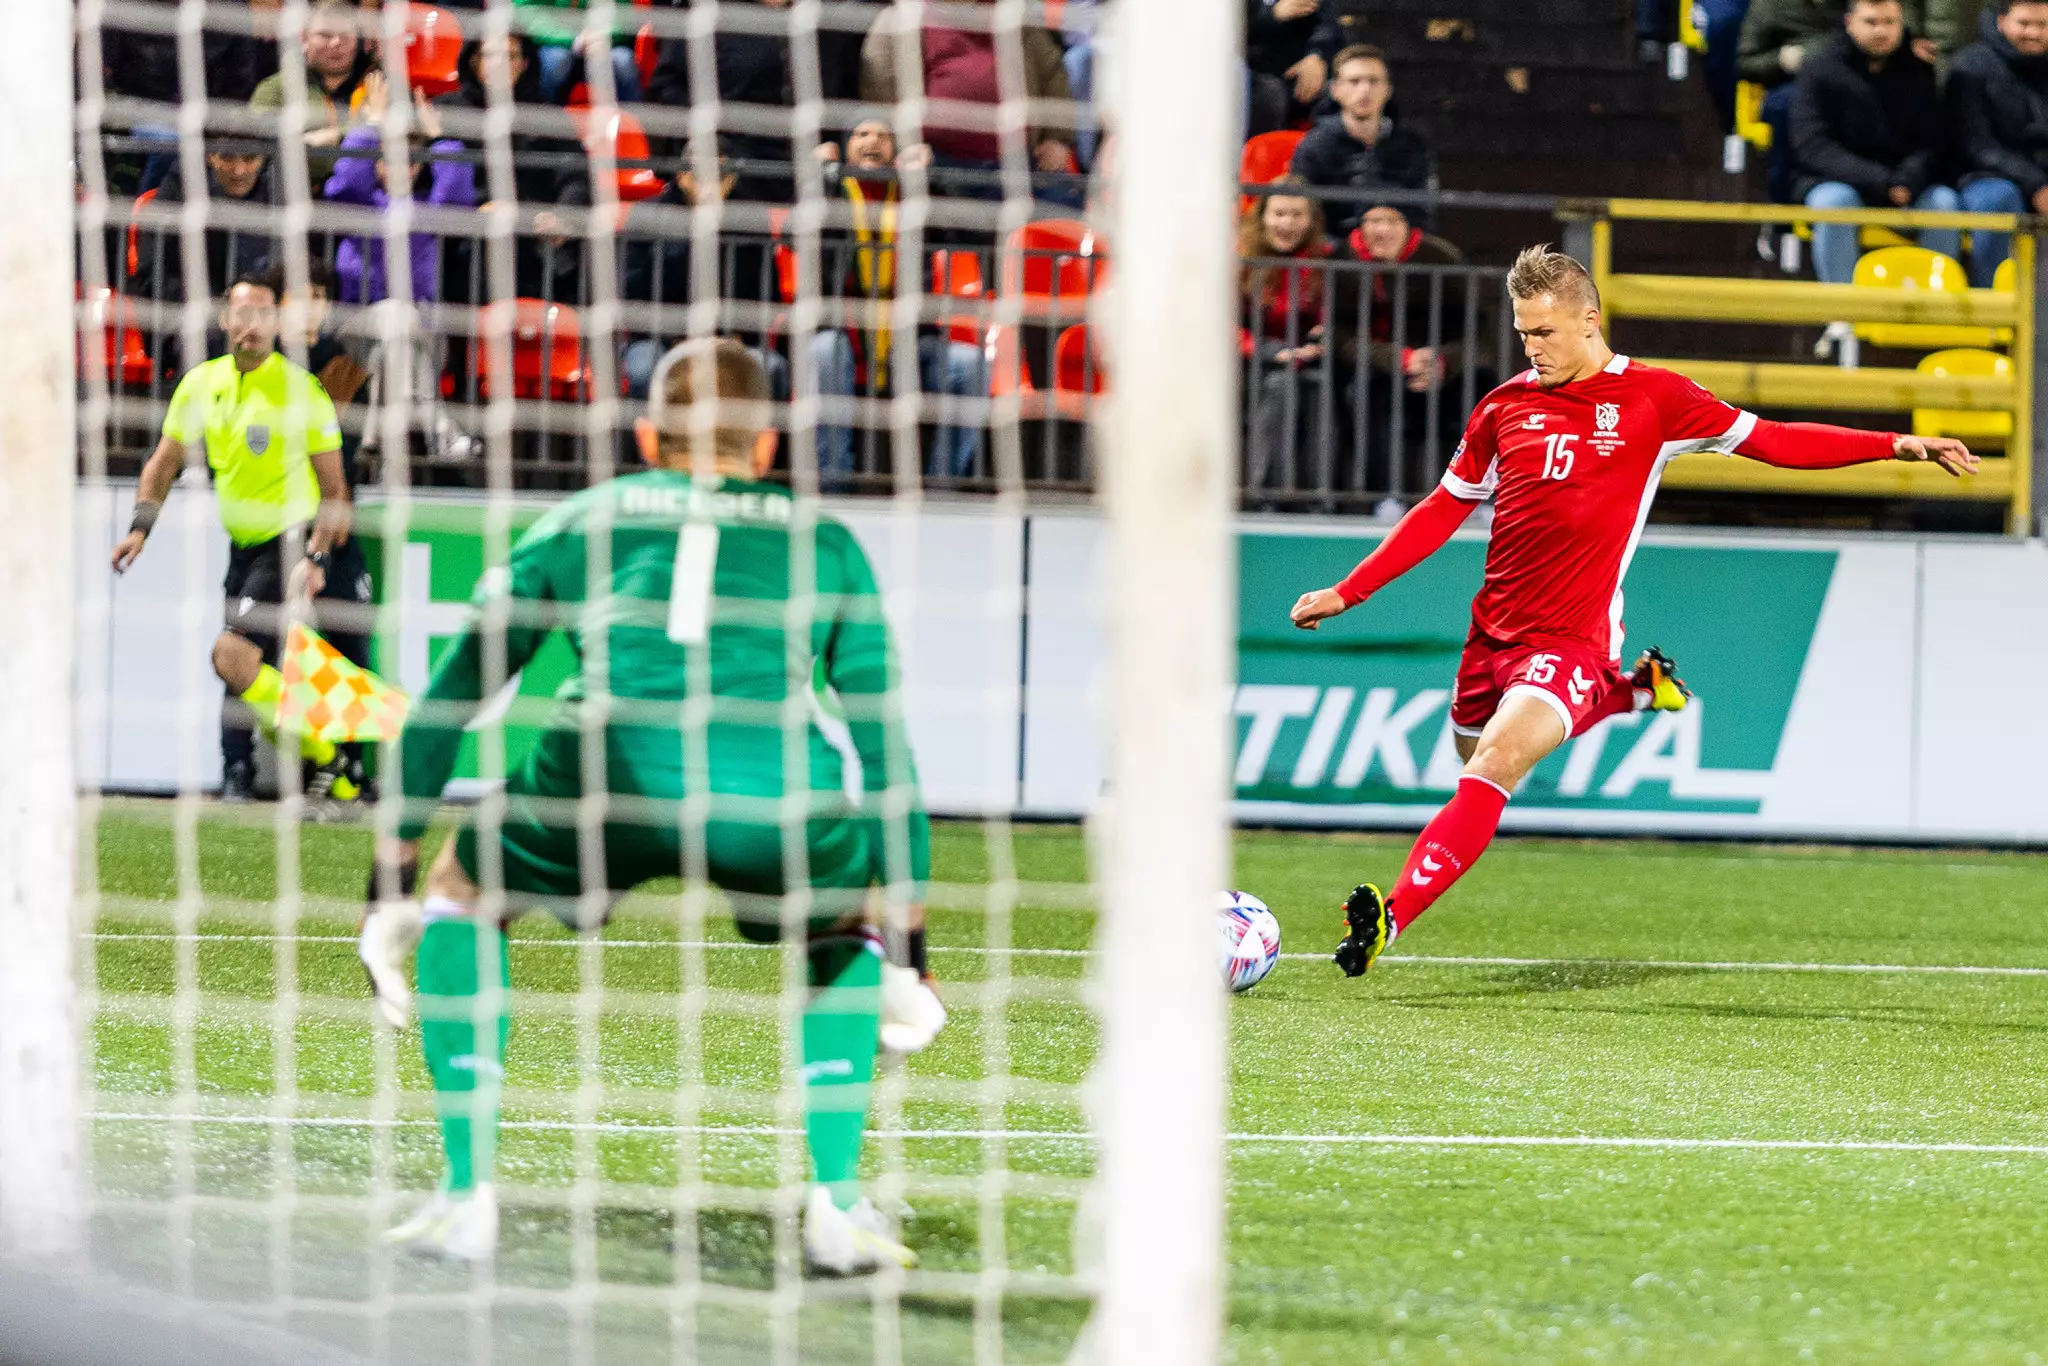 Lietuvos futbolininkai lieka paskutiniai grupėje po lygiųjų su Farerų komanda